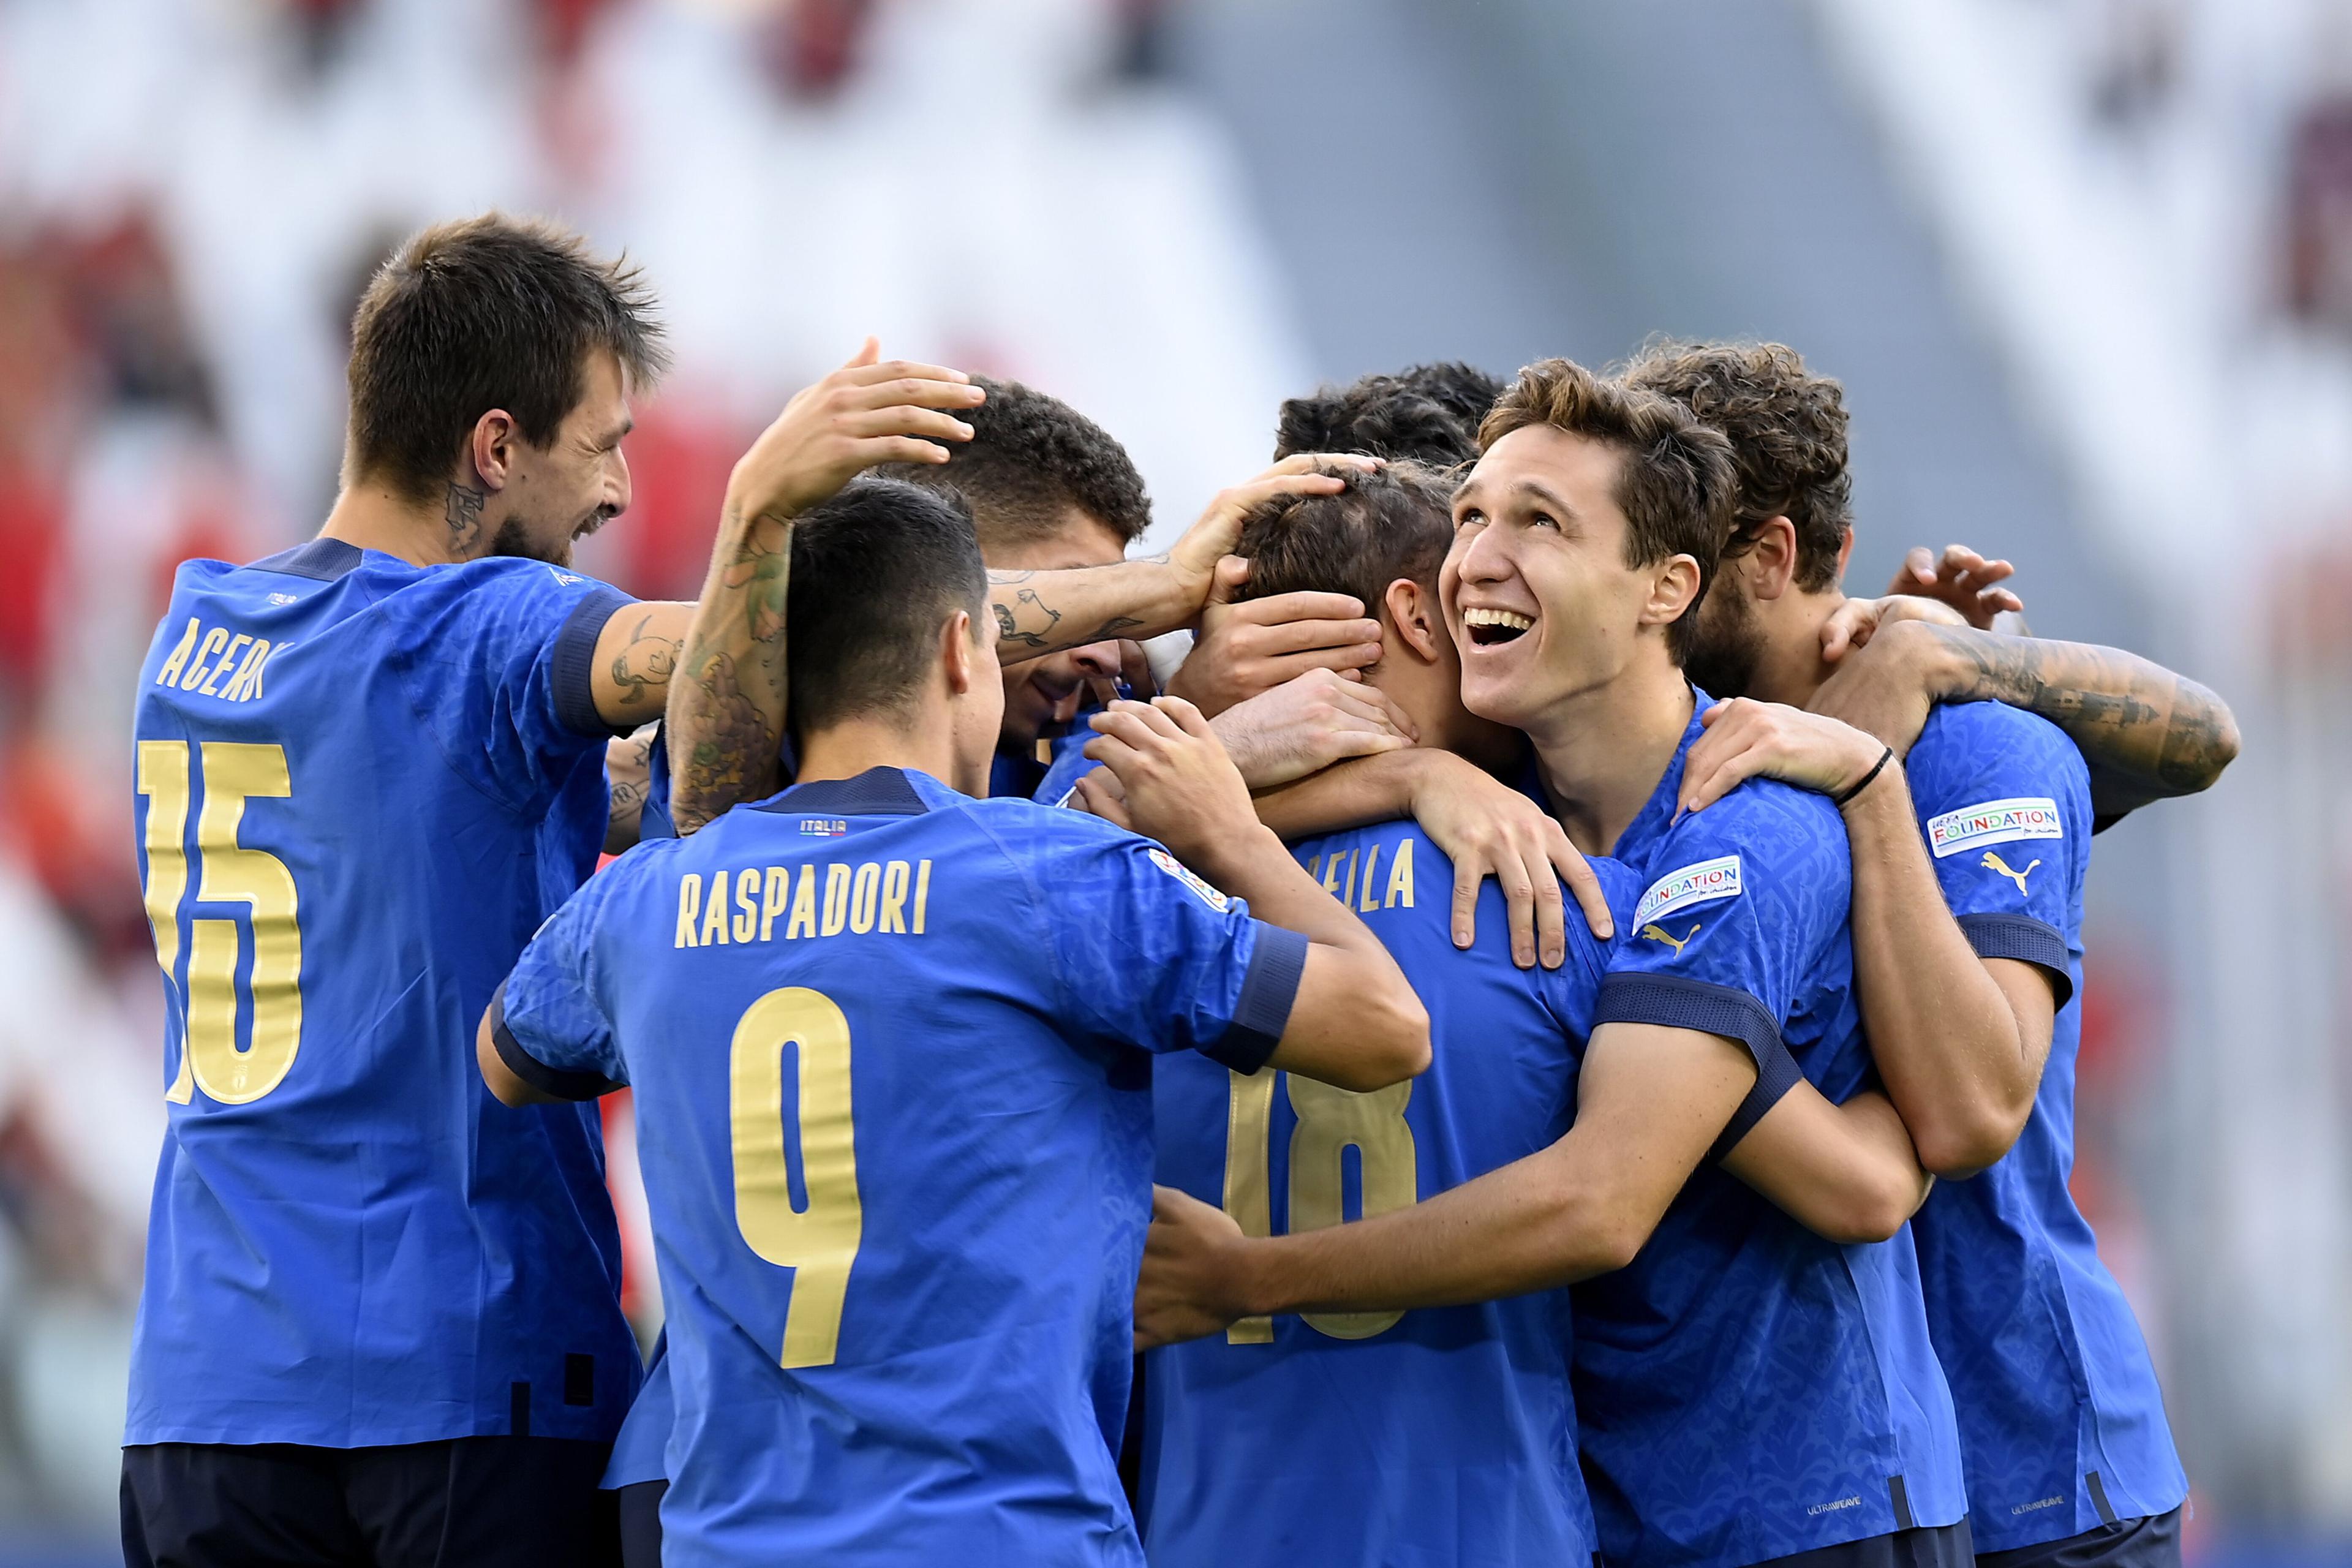 Italija bolja od Belgije za 3. mjesto u Ligi nacija